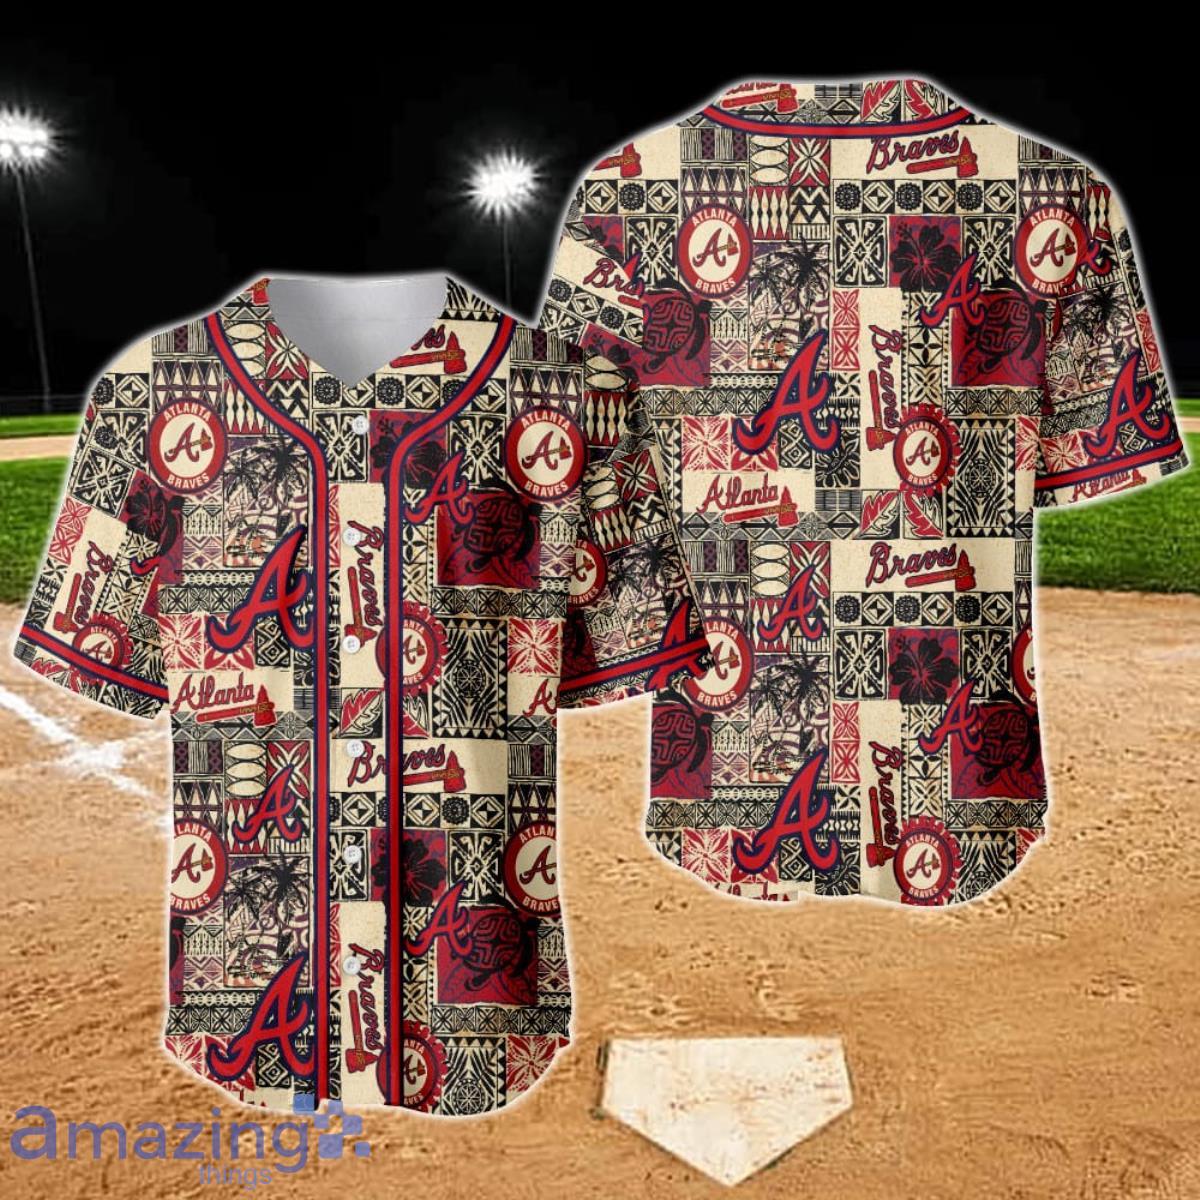 major league baseball clothing